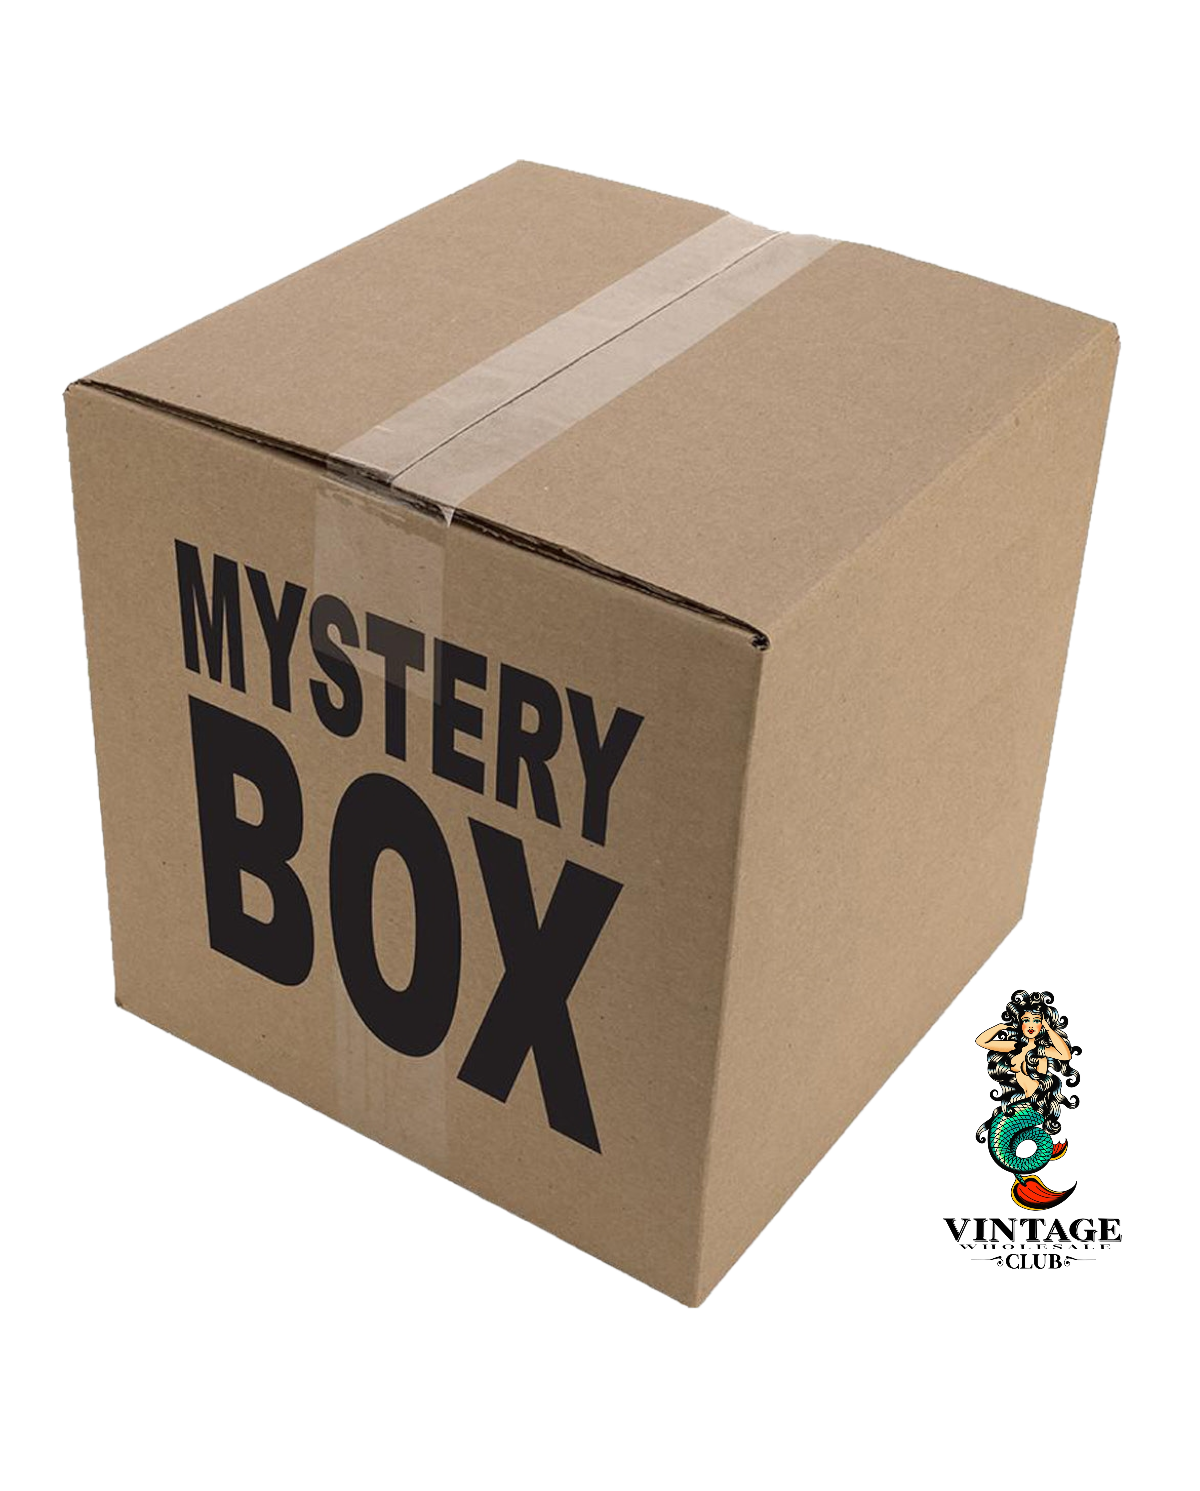 Men's Bottom's Mystery Box